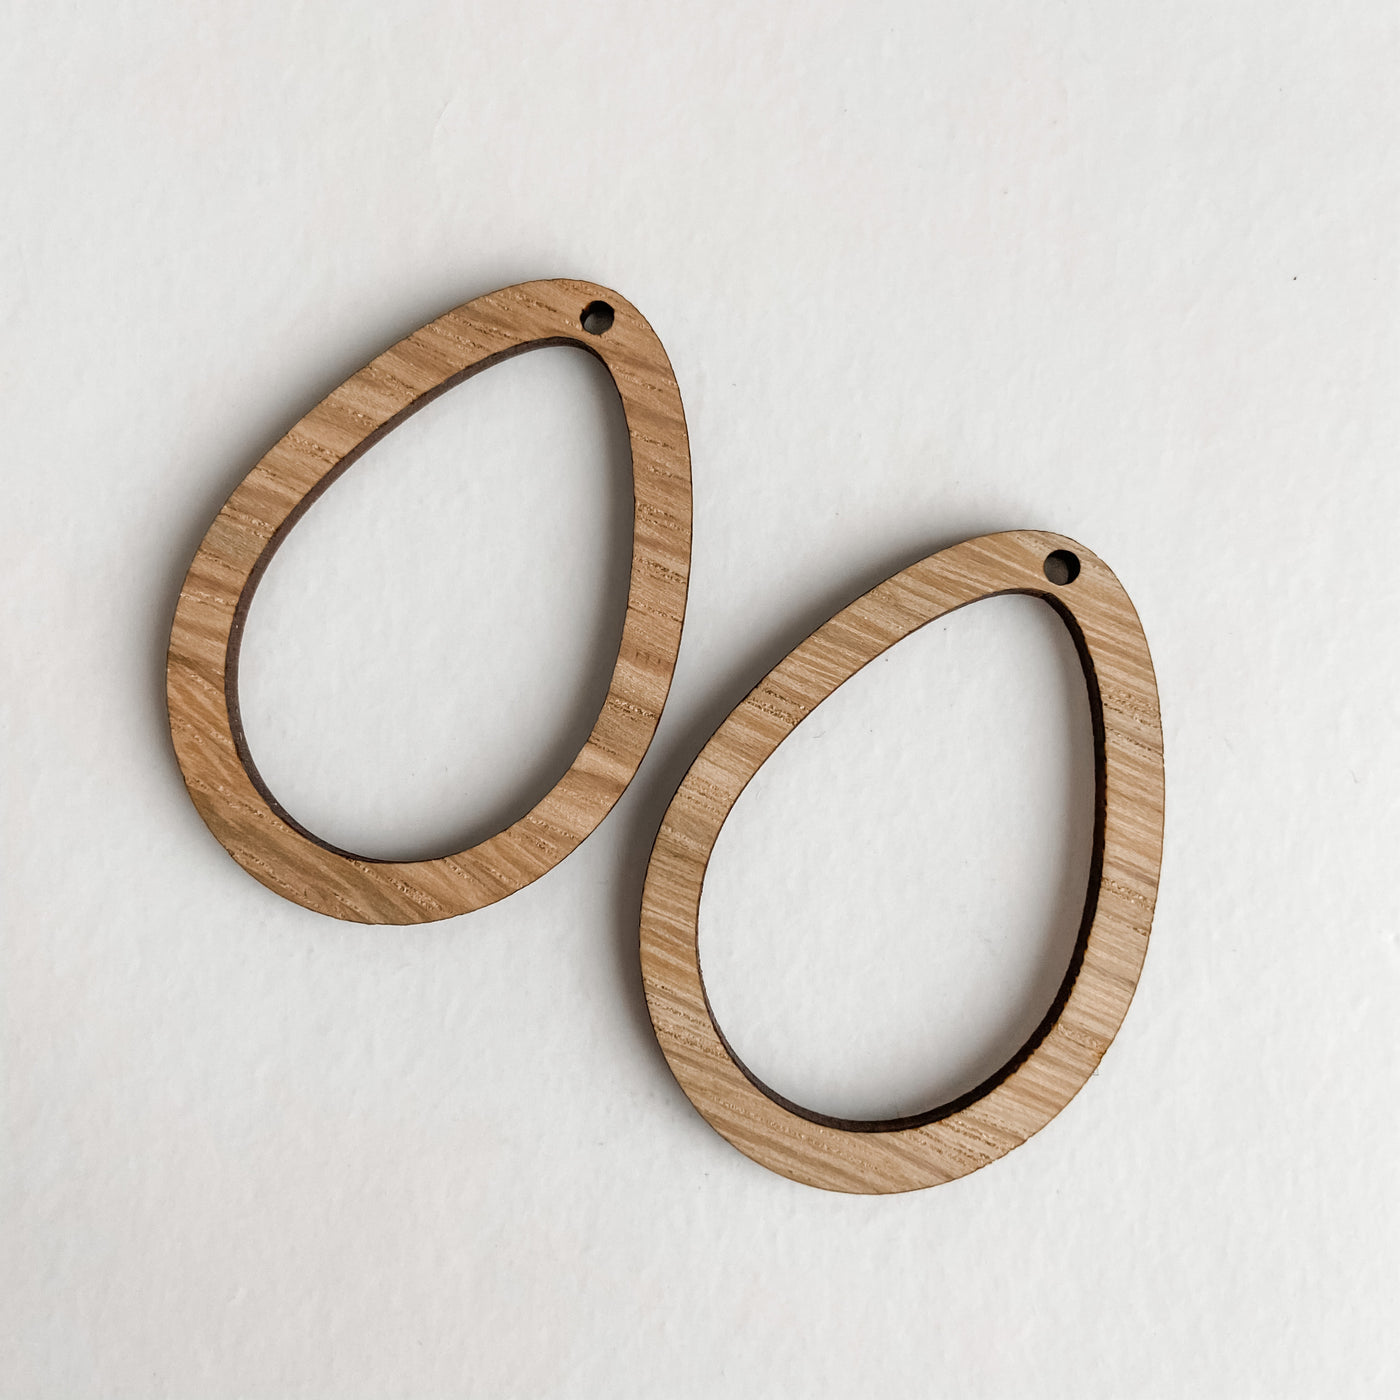 Accessories - Bamboo Earrings Teardrop